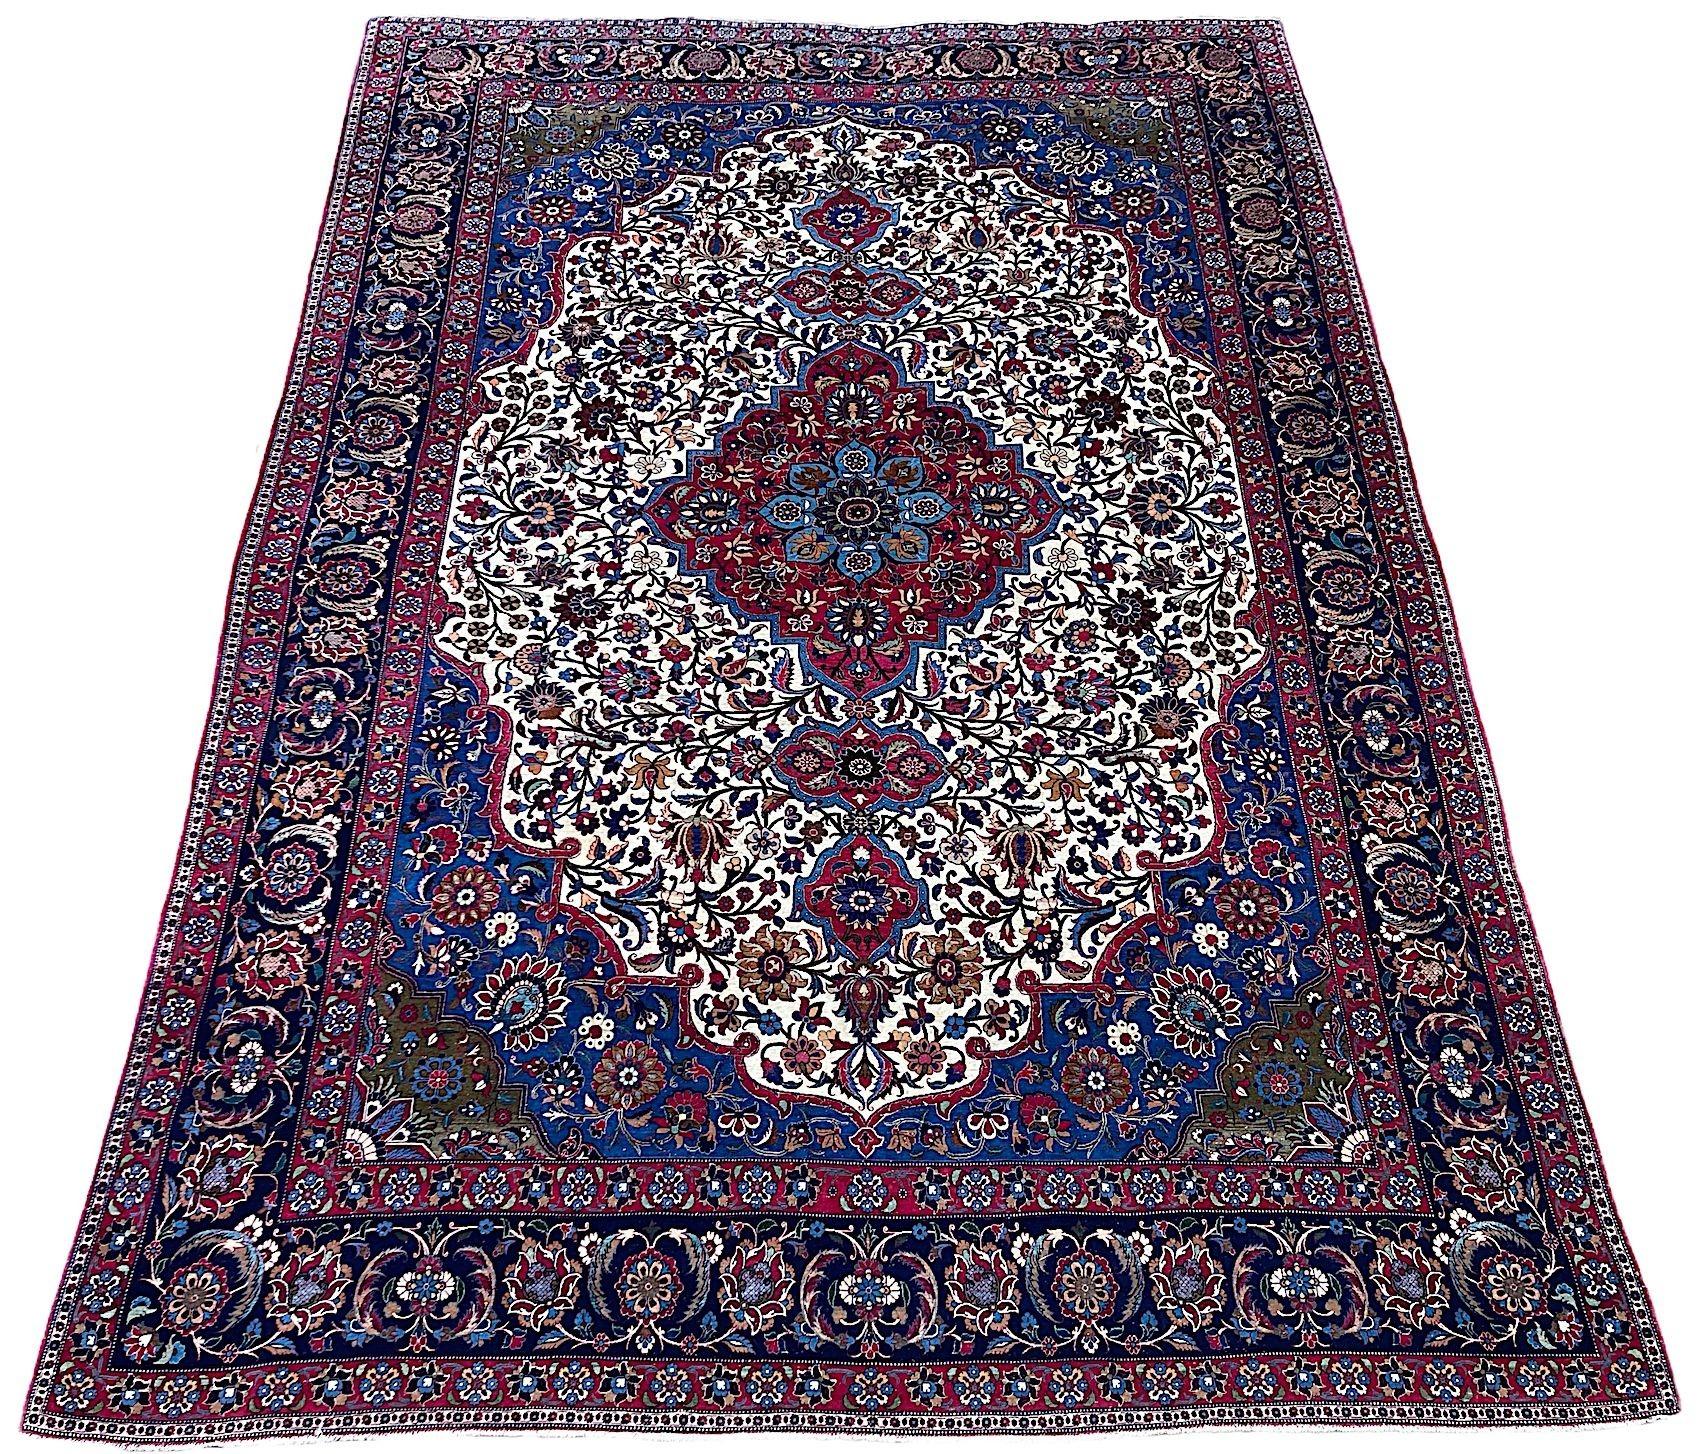 Ein hervorragender Isfahan-Teppich aus Wolle und Seide, handgewebt um 1920. Das Design zeigt ein einzelnes Medaillon auf einem elfenbeinfarbenen Feld aus Blumen und Ranken, umgeben von einer indigoblauen Bordüre mit großen Blütenköpfen. Fein gewebt